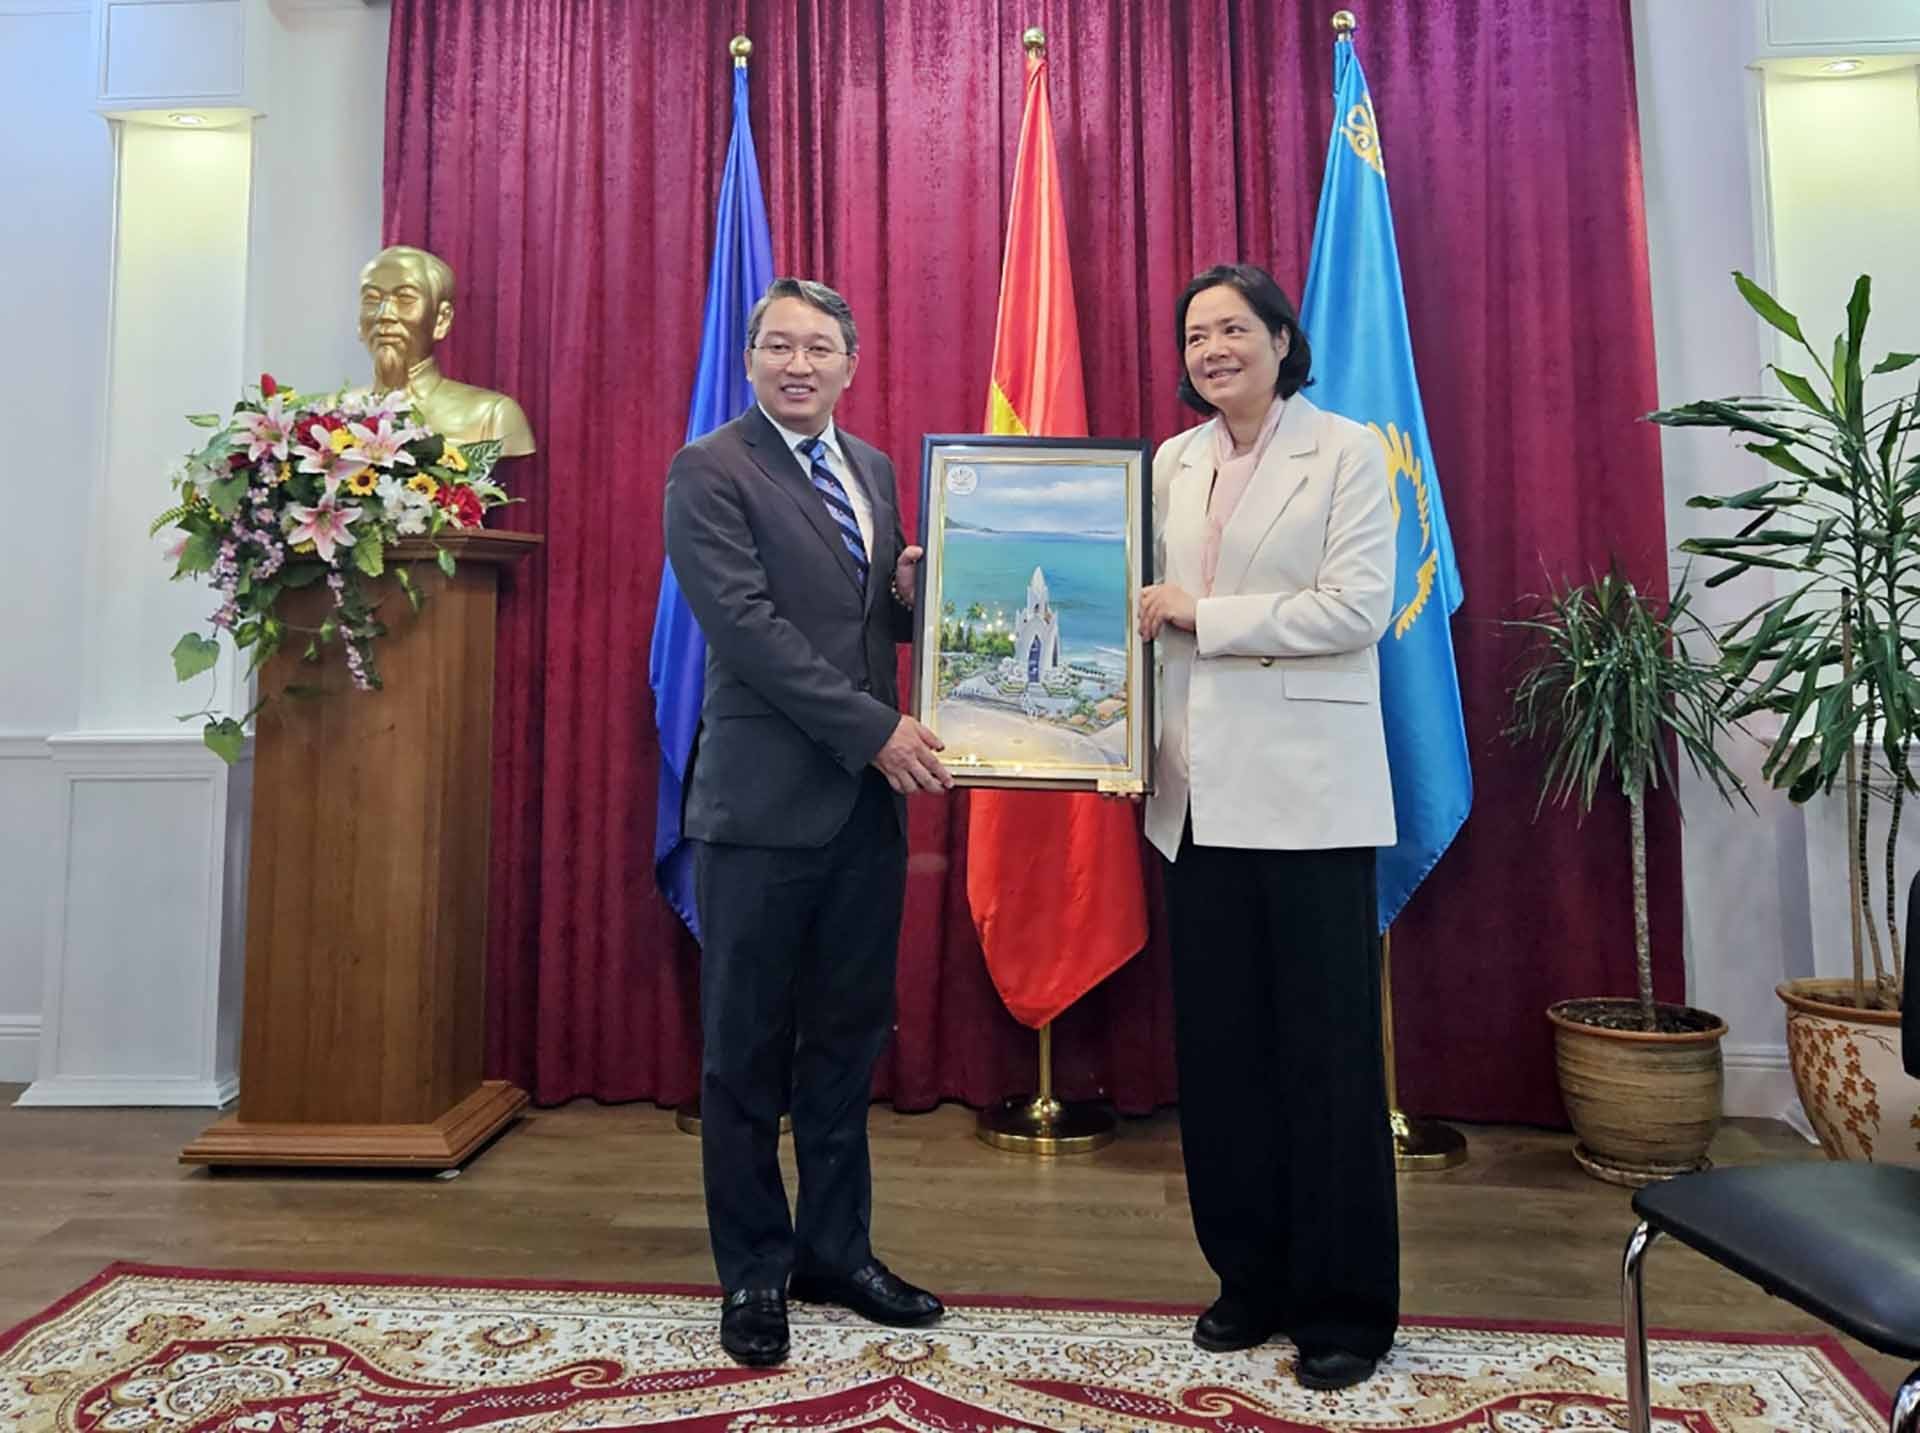 Thành phố Almaty, Kazakhstan đang xúc tiến đặt tên đường mang tên Chủ tịch Hồ Chí Minh